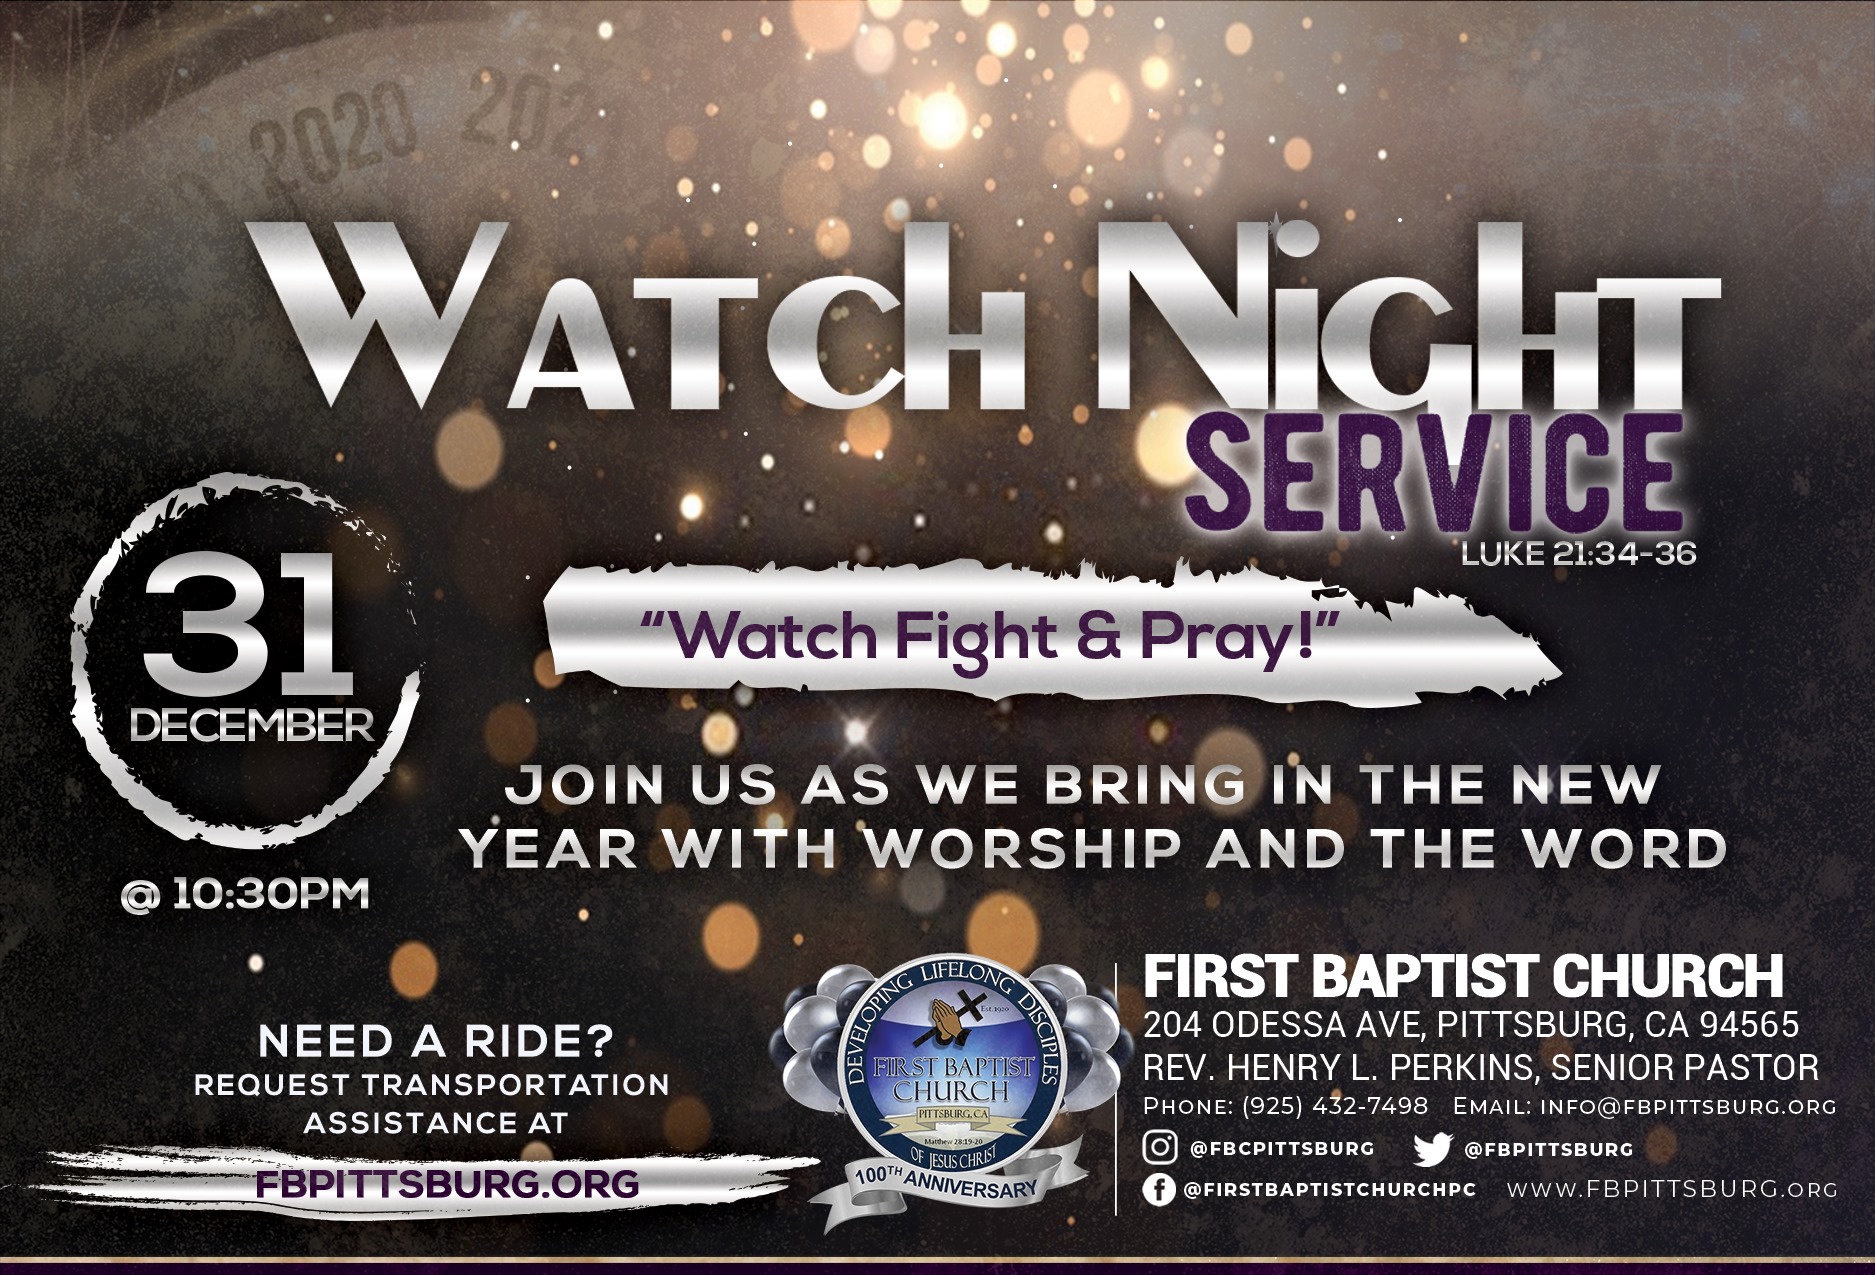 Fbc Watch Night Service 2019